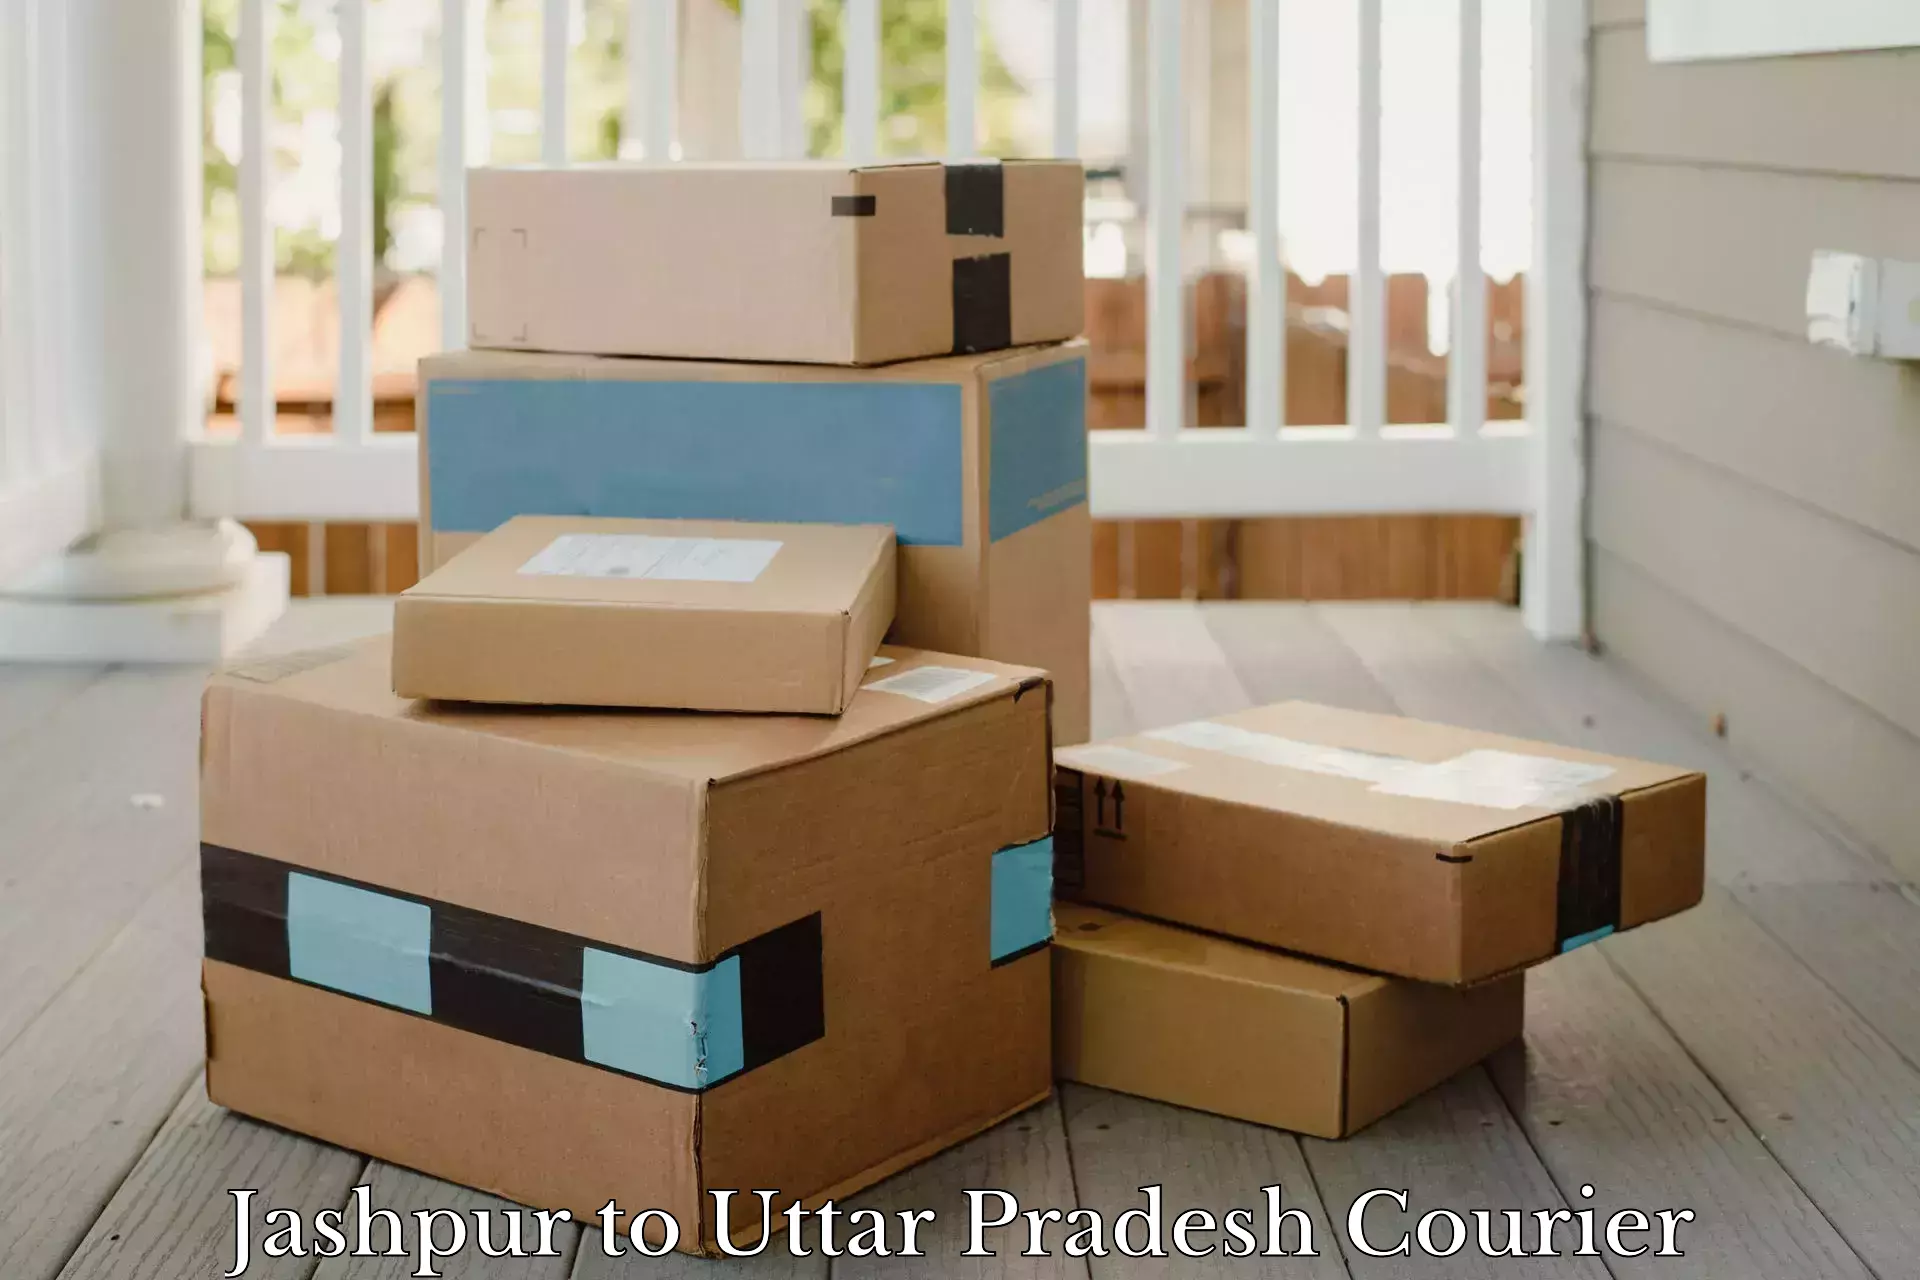 Ocean freight courier Jashpur to Uttar Pradesh